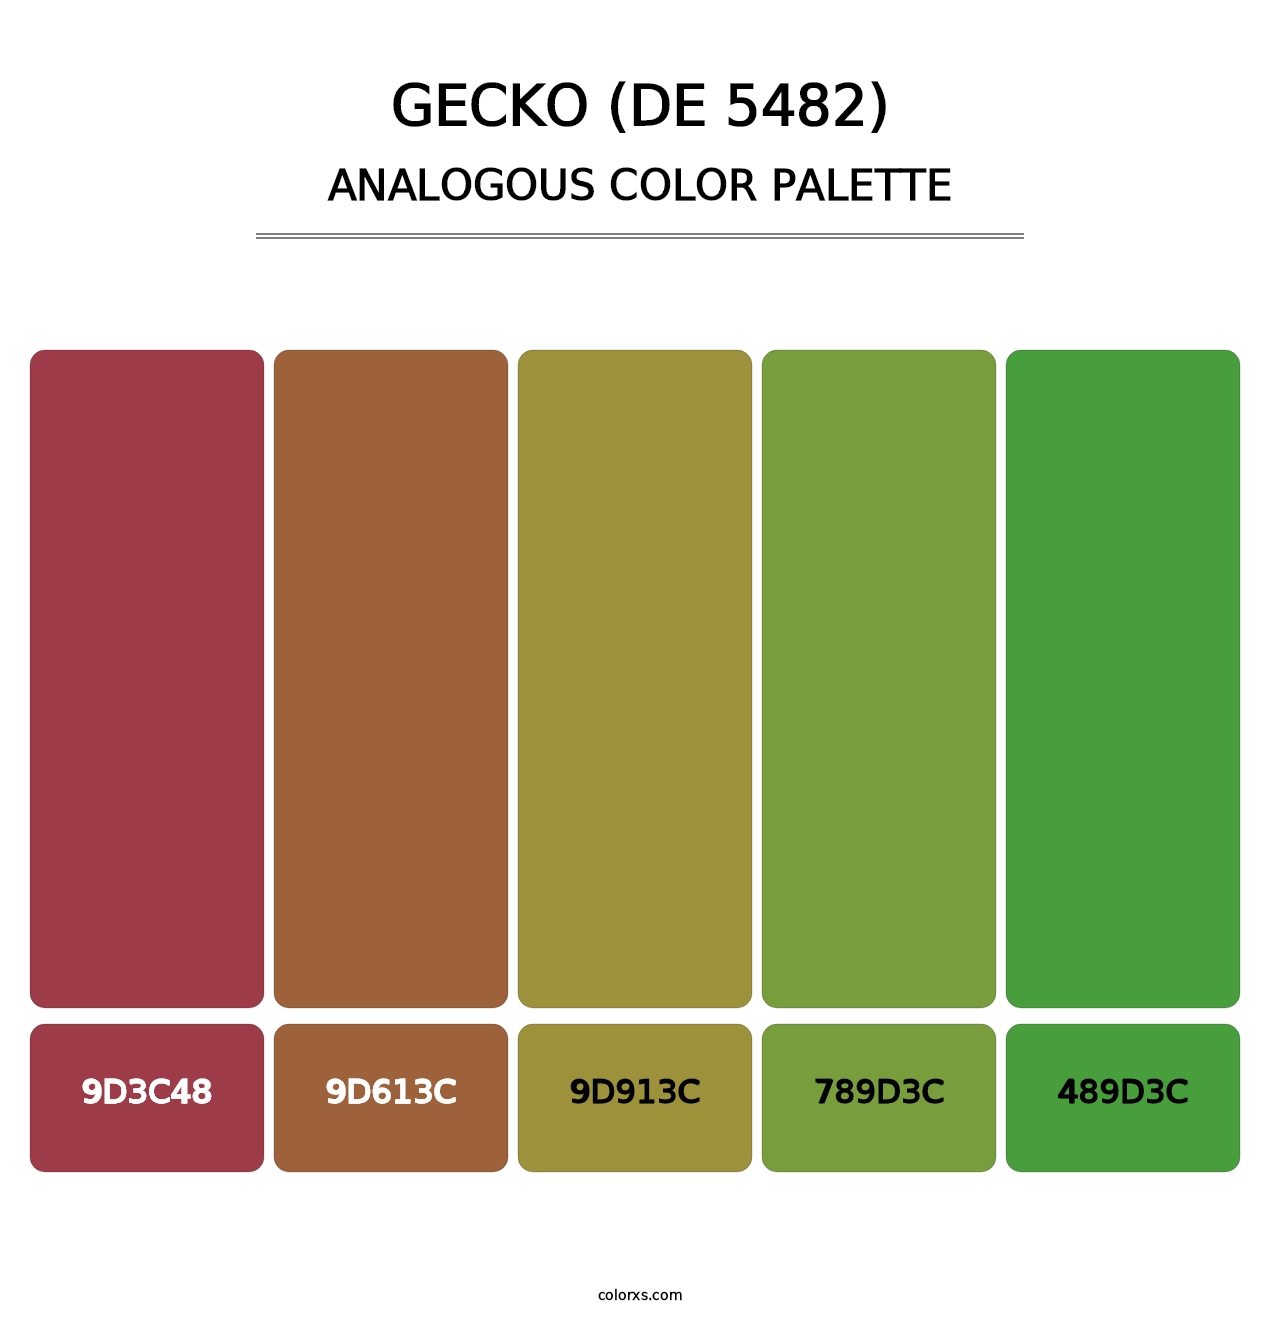 Gecko (DE 5482) - Analogous Color Palette